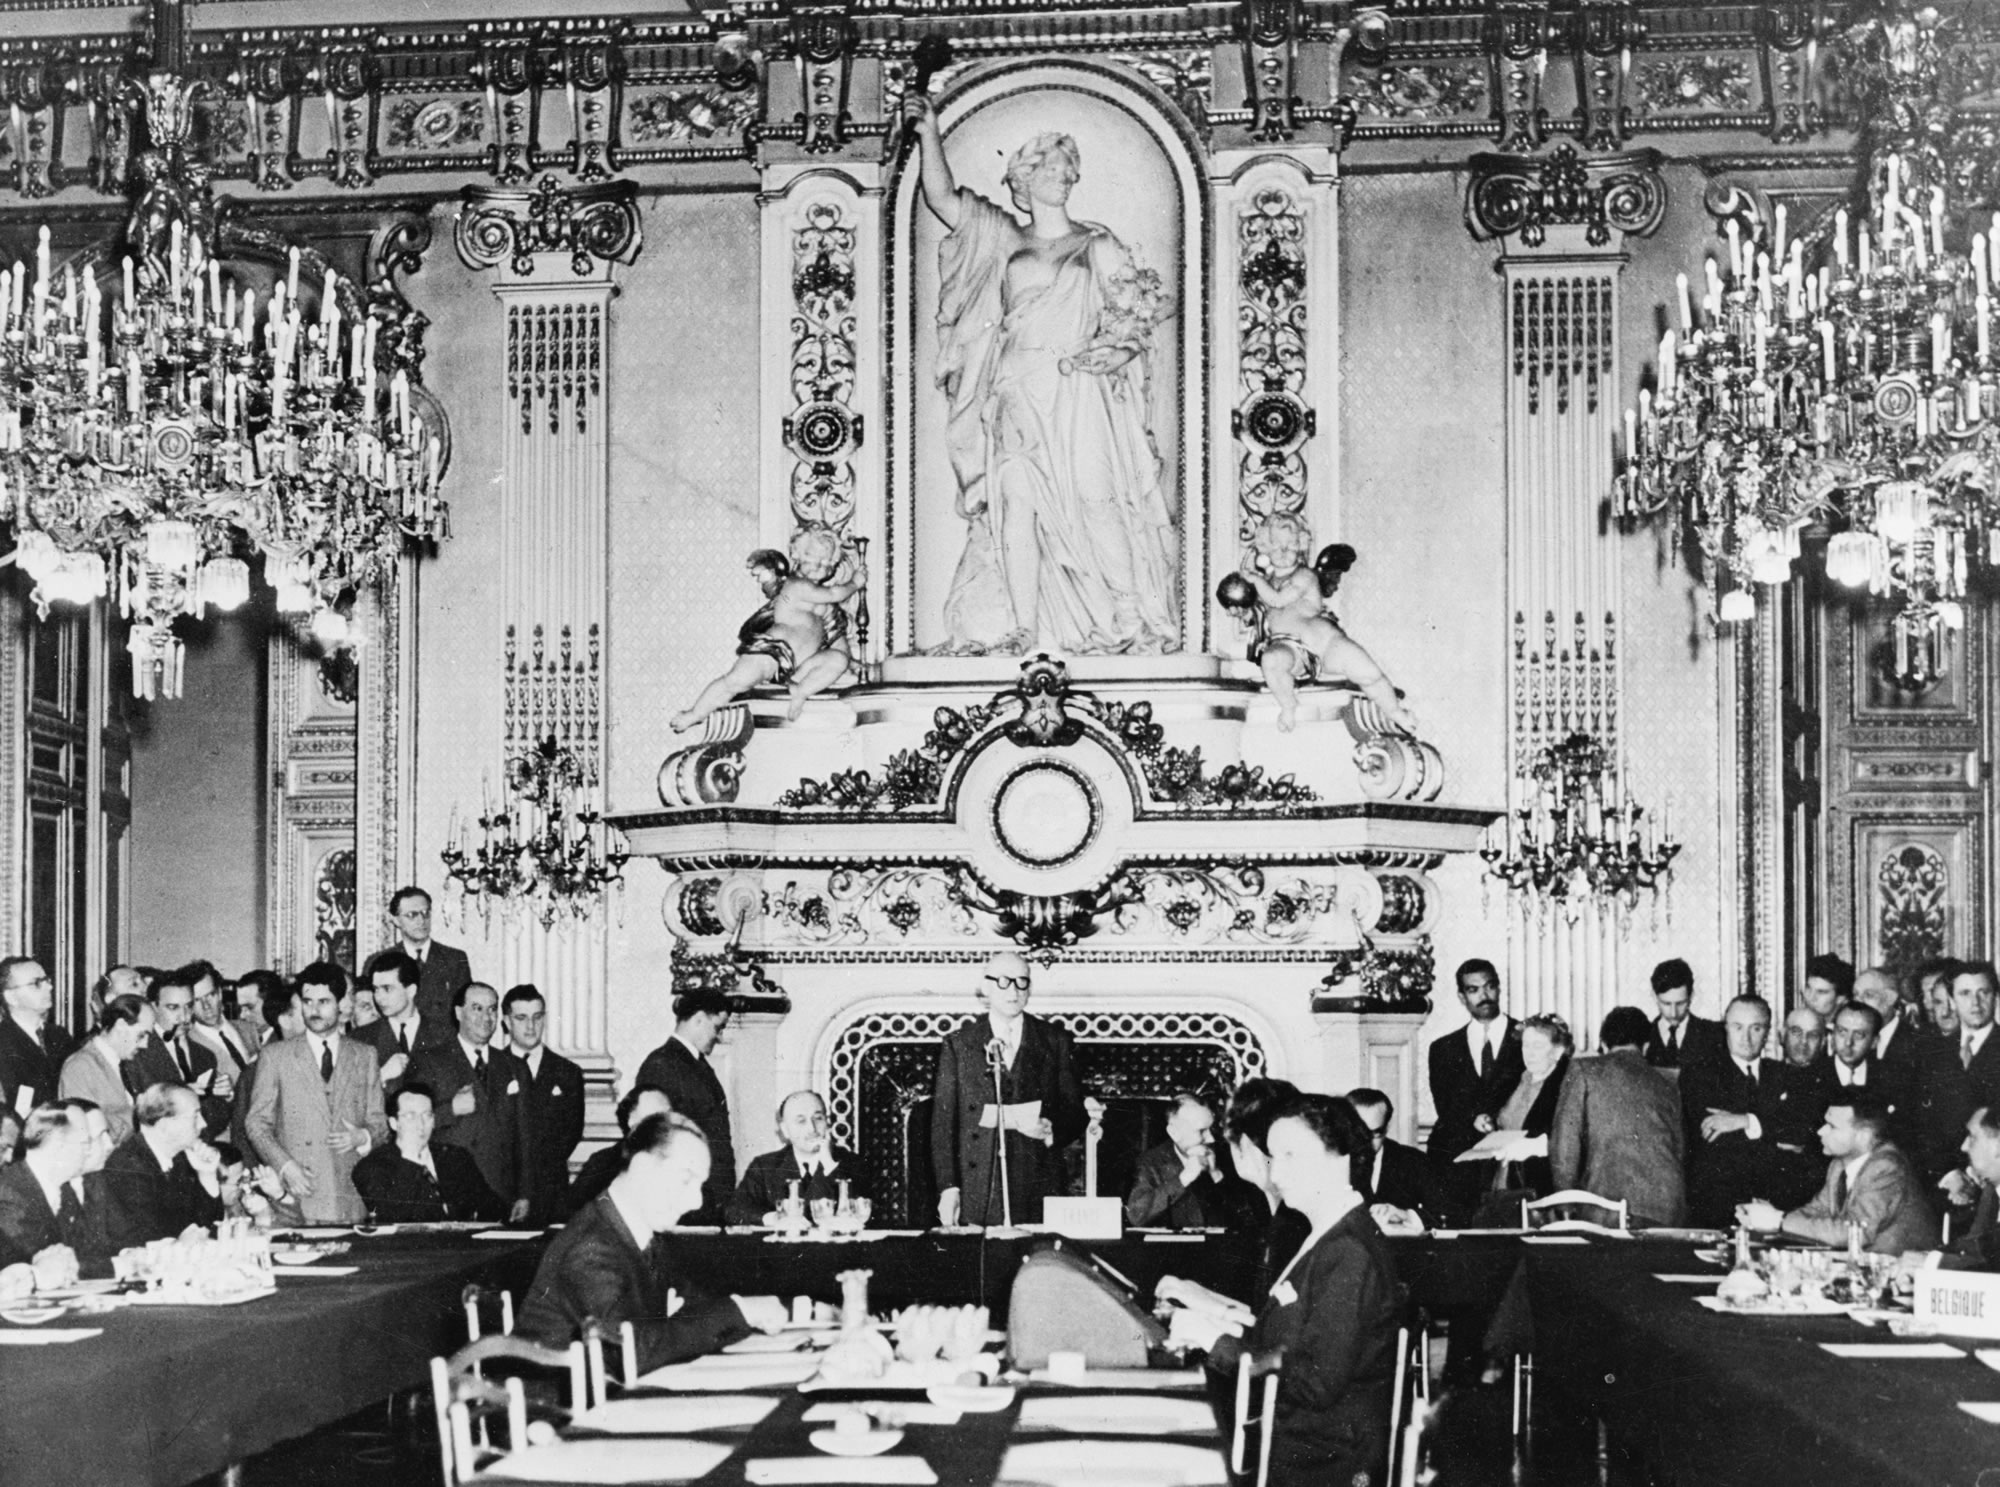 Schumanin julistus 9. toukokuuta 1950, Ranskan ulkoministeriö, Salon de l’Horloge, Quai d’Orsay, Pariisi: Ranskan ulkoministeri Robert Schuman ehdotti Euroopan hiili- ja teräteollisuuden yhdistämistä Euroopan hiili- ja teräsyhteisöksi. Ajatuksena oli, että tämän myötä sota osallistuvien maiden välillä olisi paitsi ajatuksena myös käytännössä mahdoton.